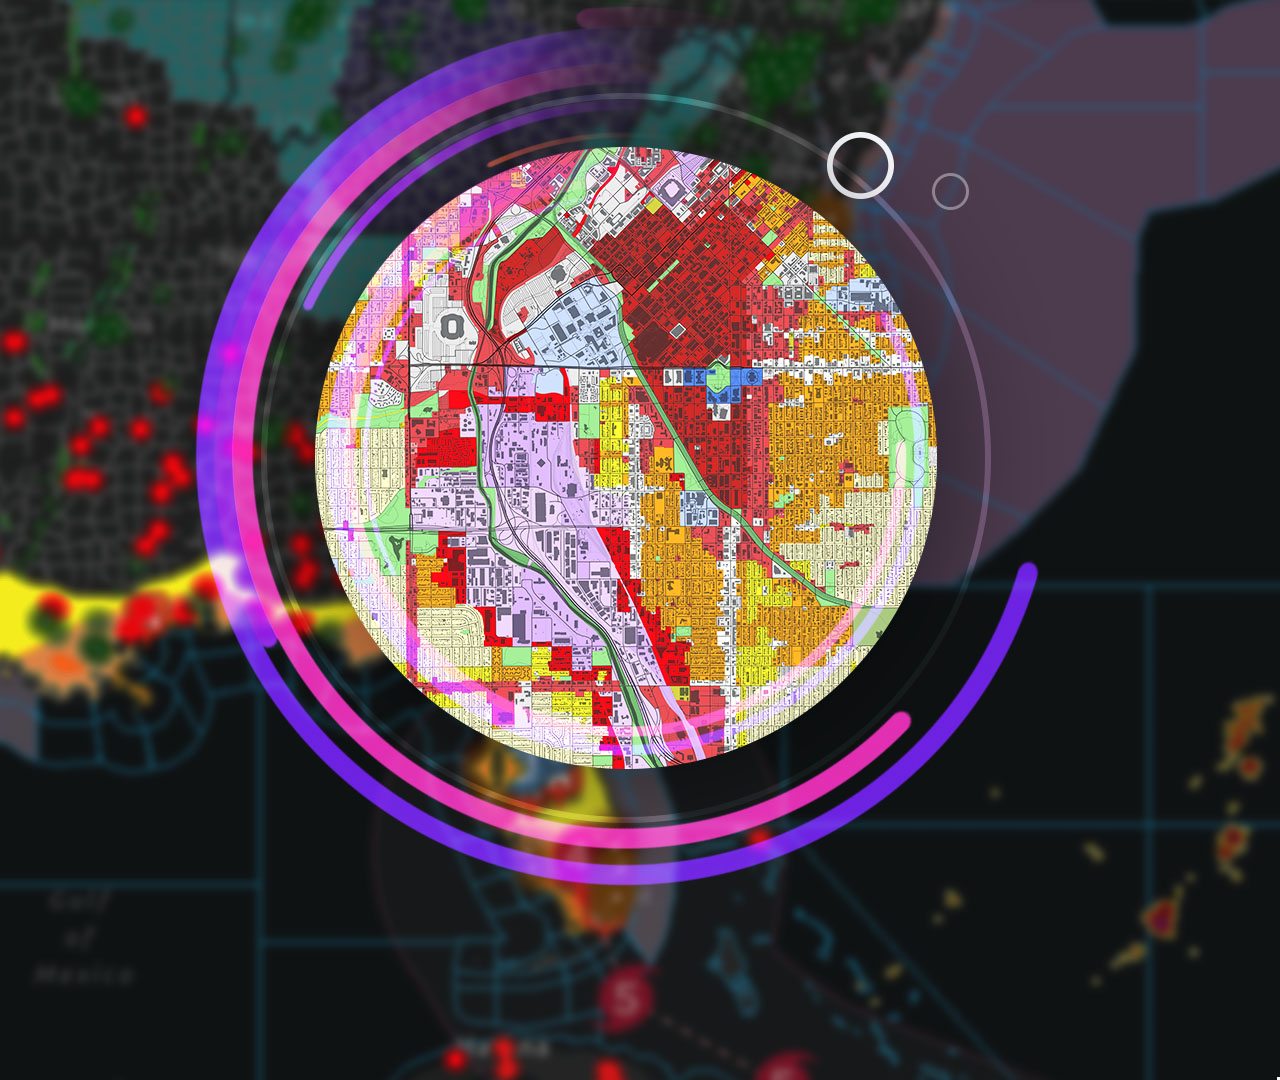 Компьютер, показывающий карту с пространственными данными, окруженный изображениями высотных зданий города